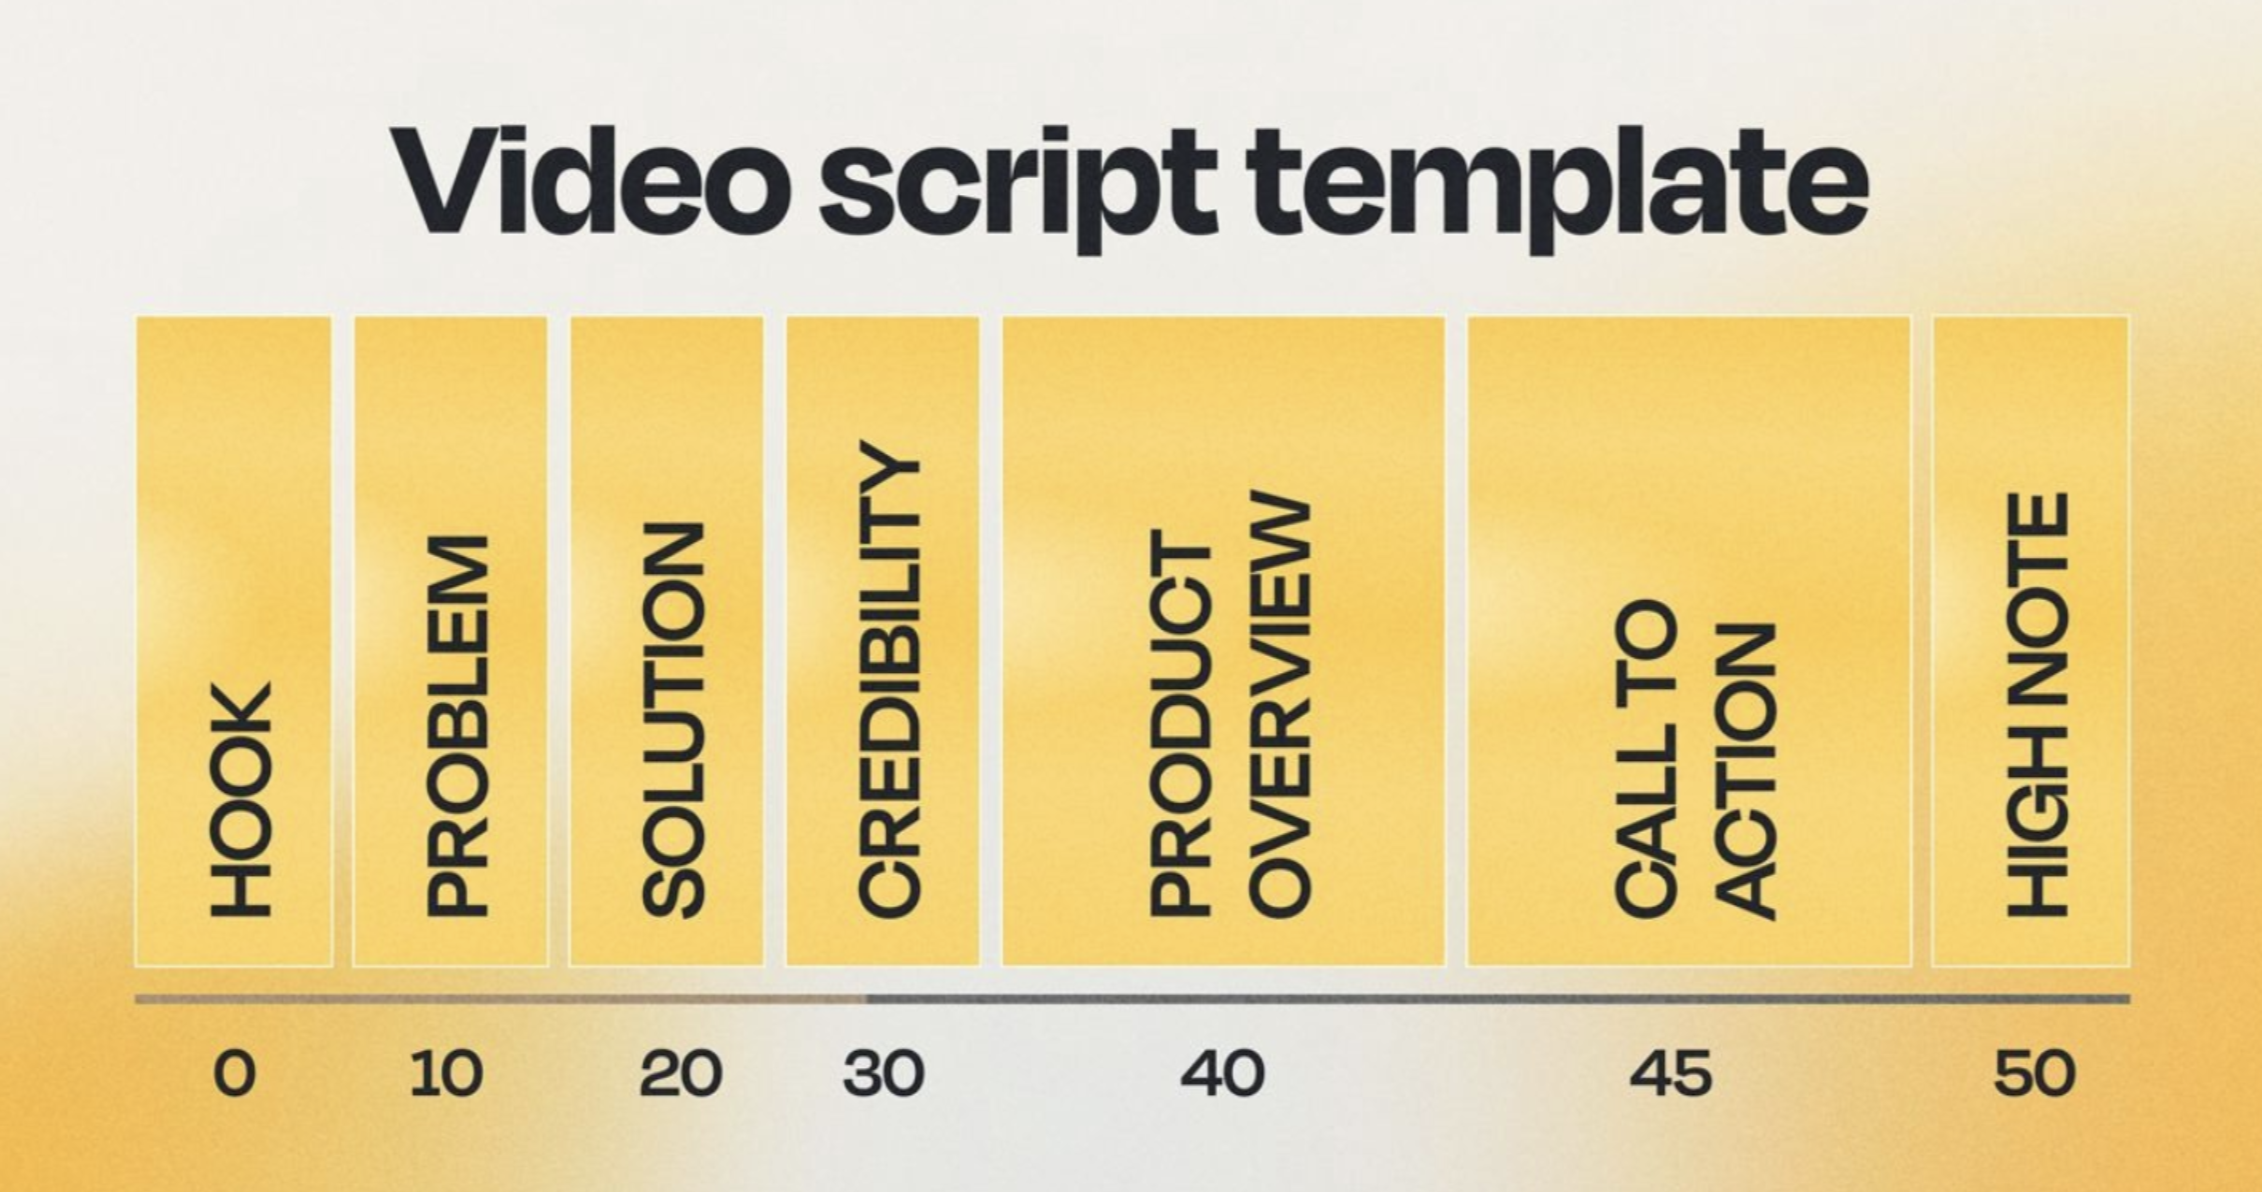 Video script, script template, marketing video script
